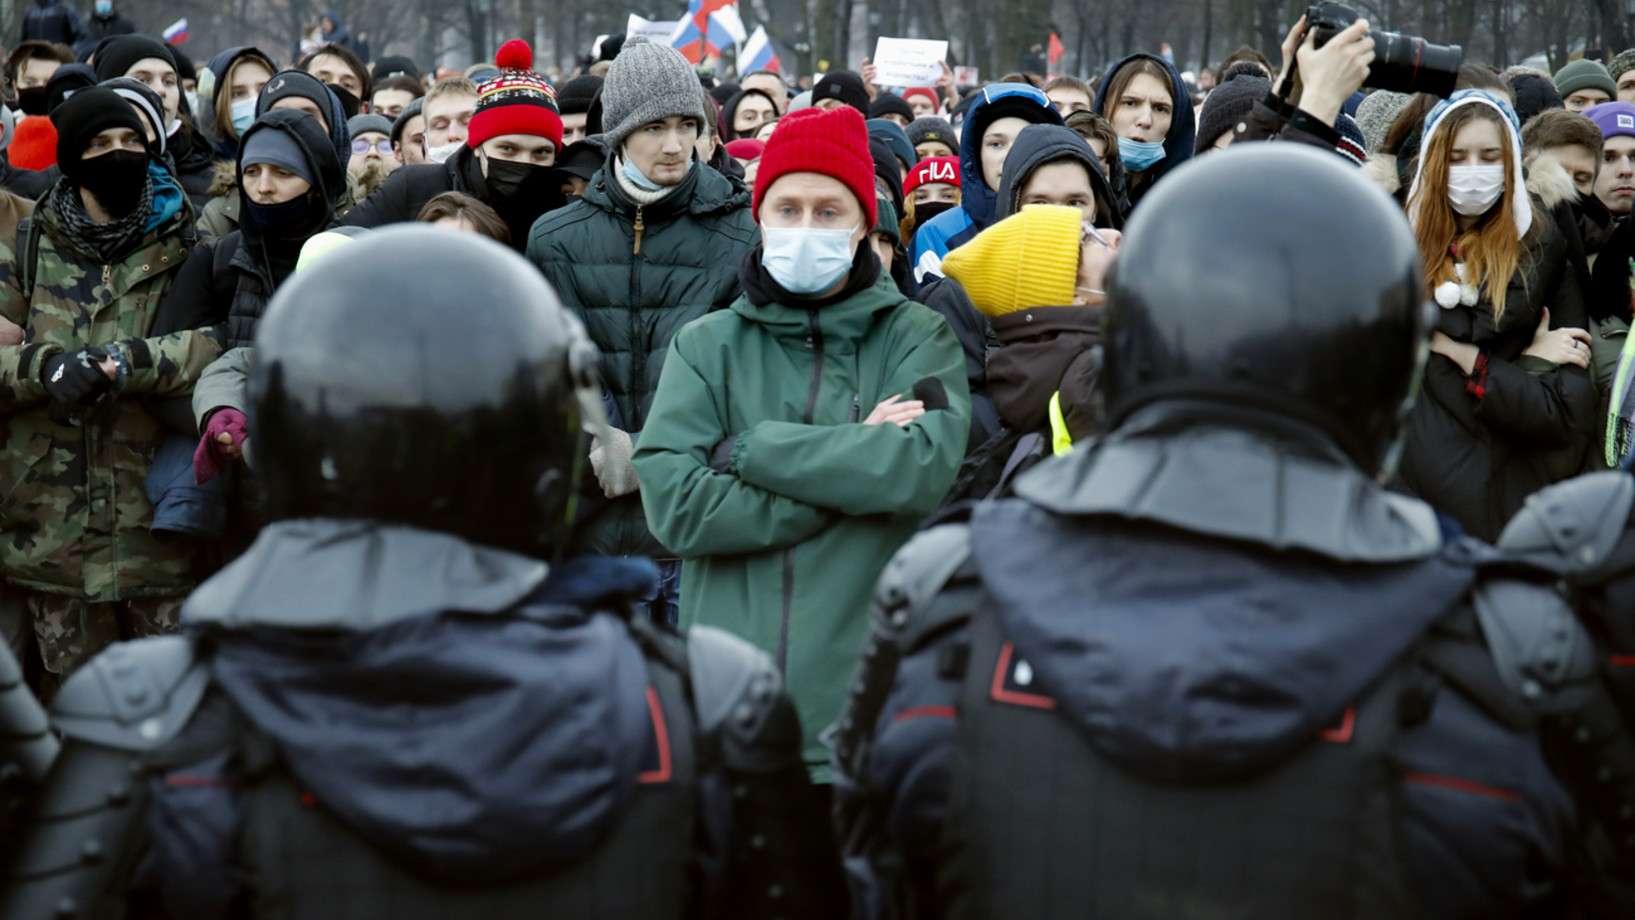 Polizisten blockieren am vergangenen Samstag Demonstranten in St. Petersburg, die die Freilassung Nawalnys fordern. (Foto: Keystone/AP Photo/Dmitri Lovetsky)

